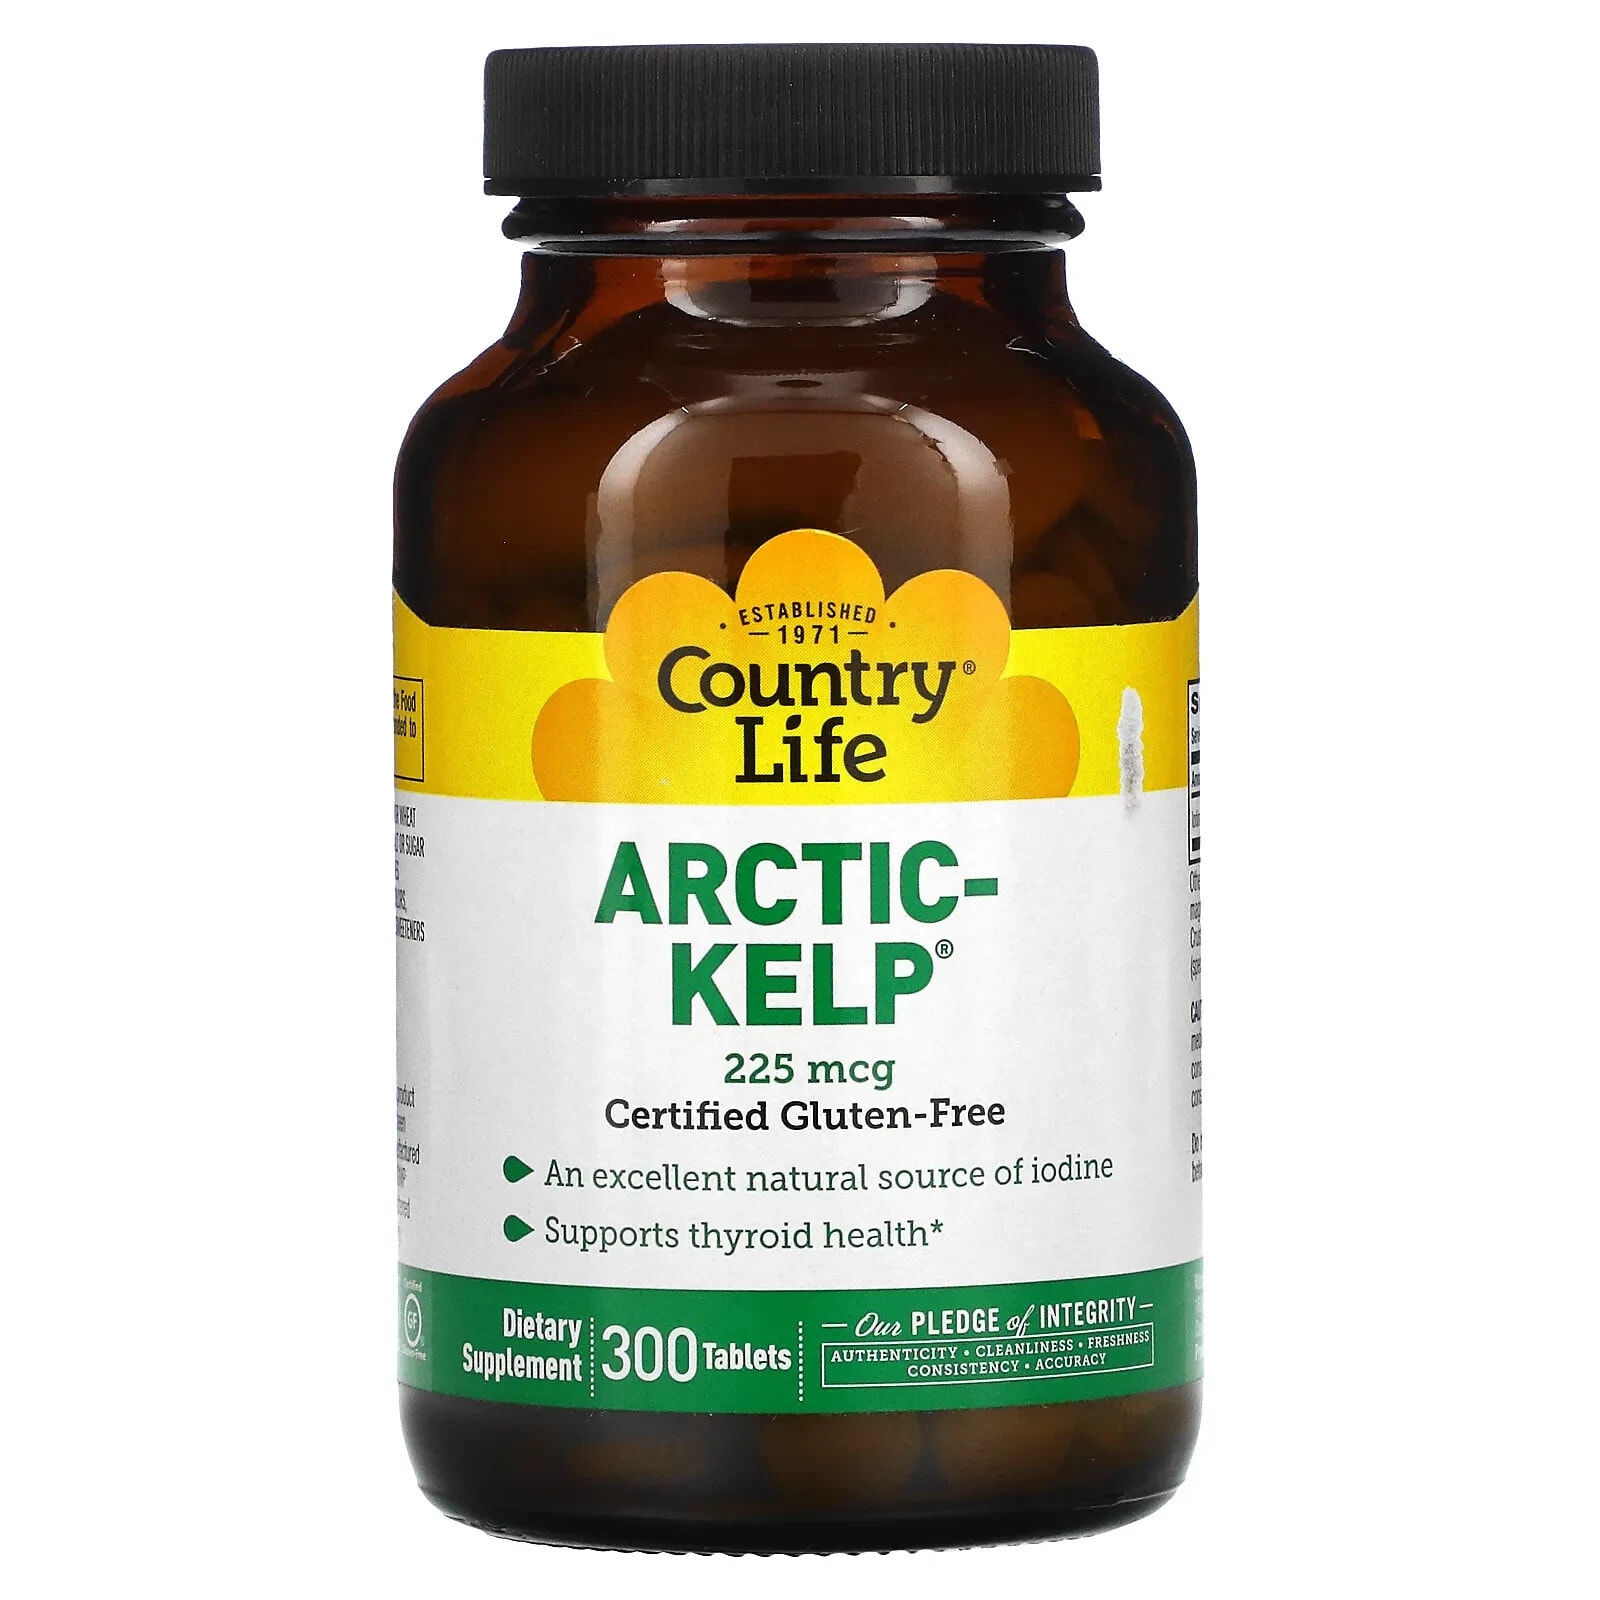 Кантри Лайф, Arctic-Kelp, арктические бурые водоросли, 225 мкг, 300 таблеток